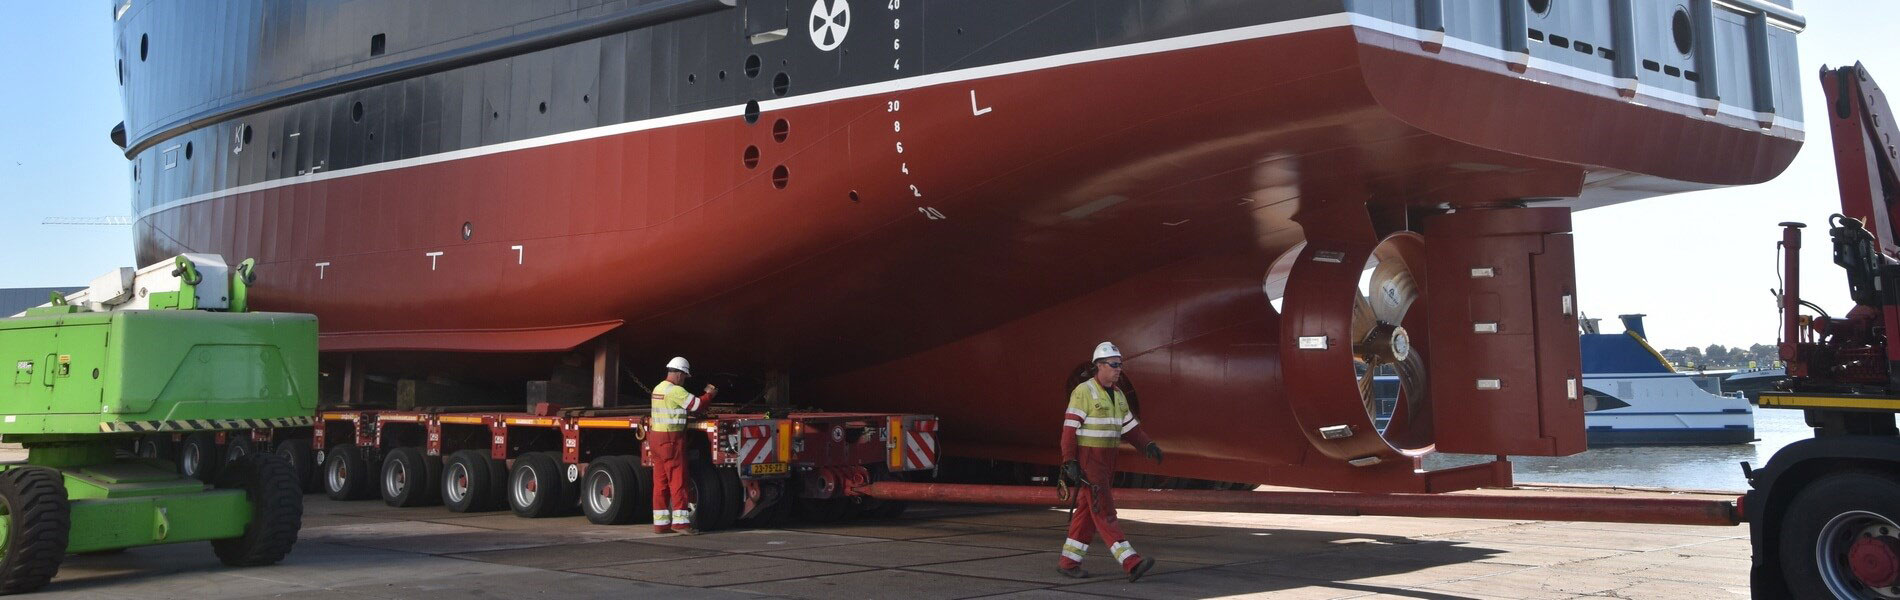 Damen Marine Components levert roer en stuurmachine voor nieuw kustonderzoeksschip